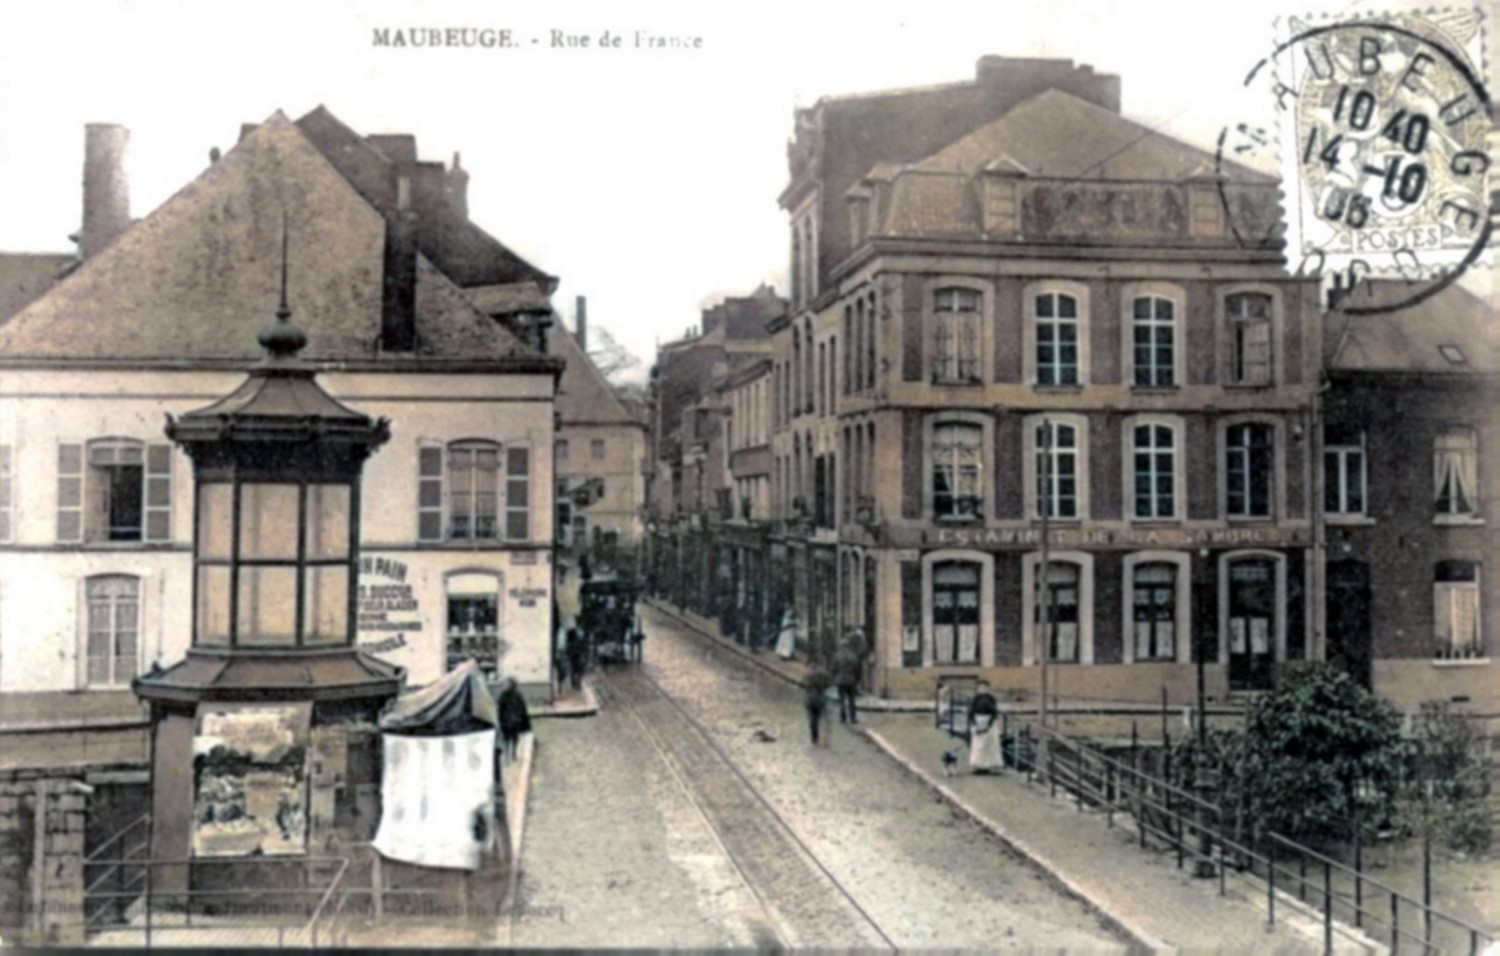 Cartes postales anciennes de Maubeuge, rue de France, le pont